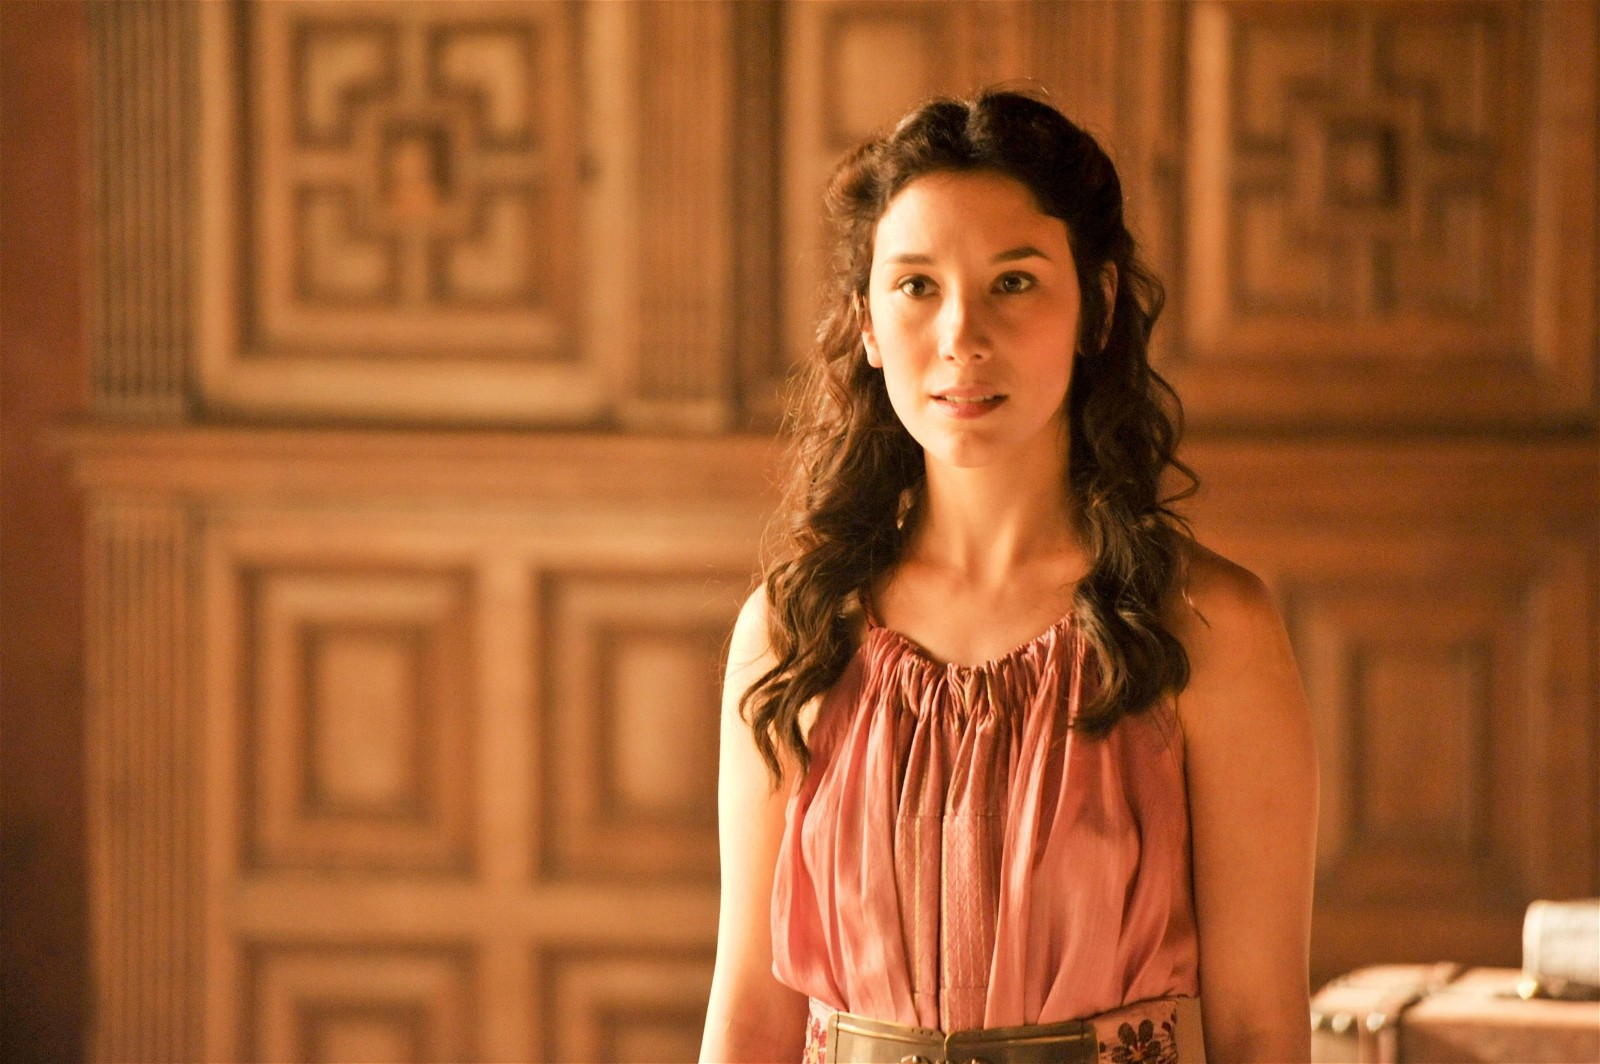 Sibel Kekilli as Shae in Game of Thrones/HBO